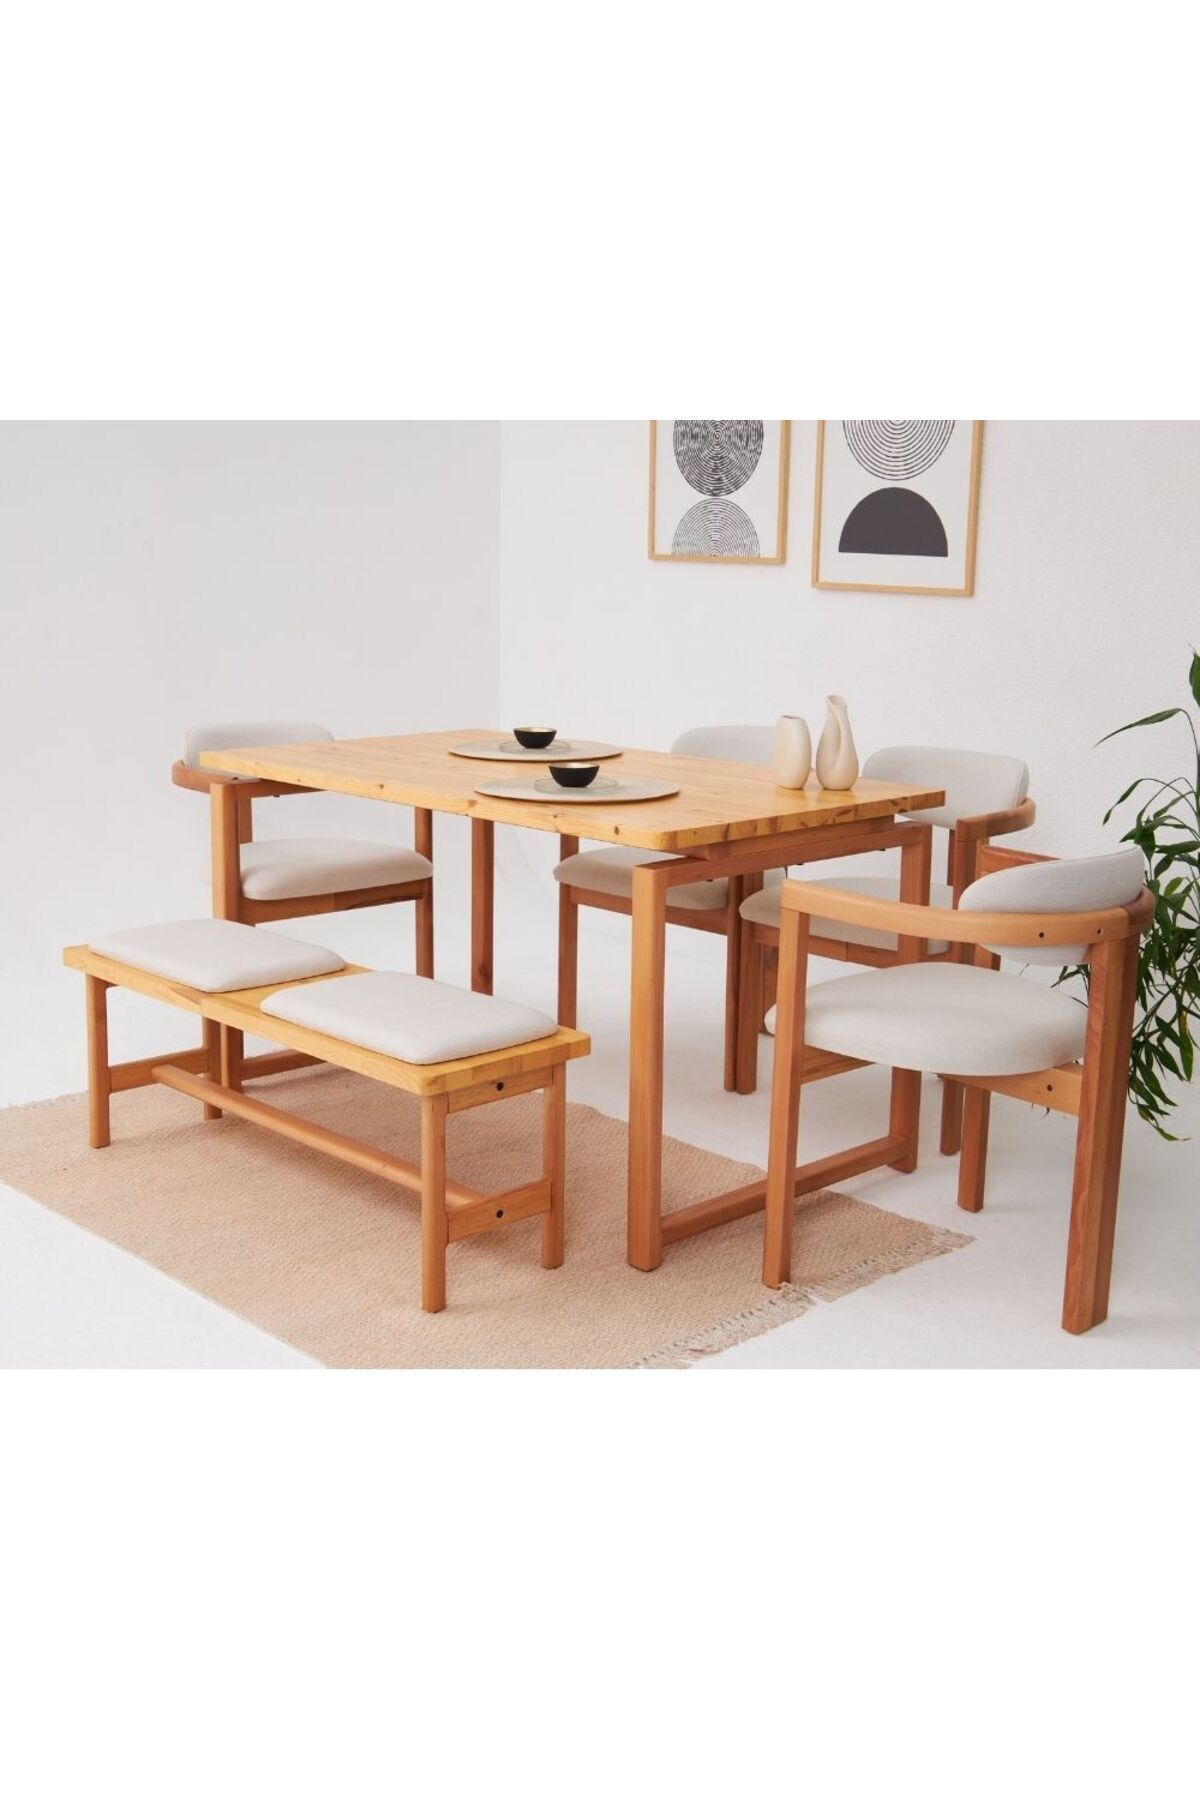 VOWTURKEY Cheri İskandinav 4 Sandalye 1 Bench 1 Masa Doğal Masif Yemek Mutfak Masa Takımı El İşçiliği